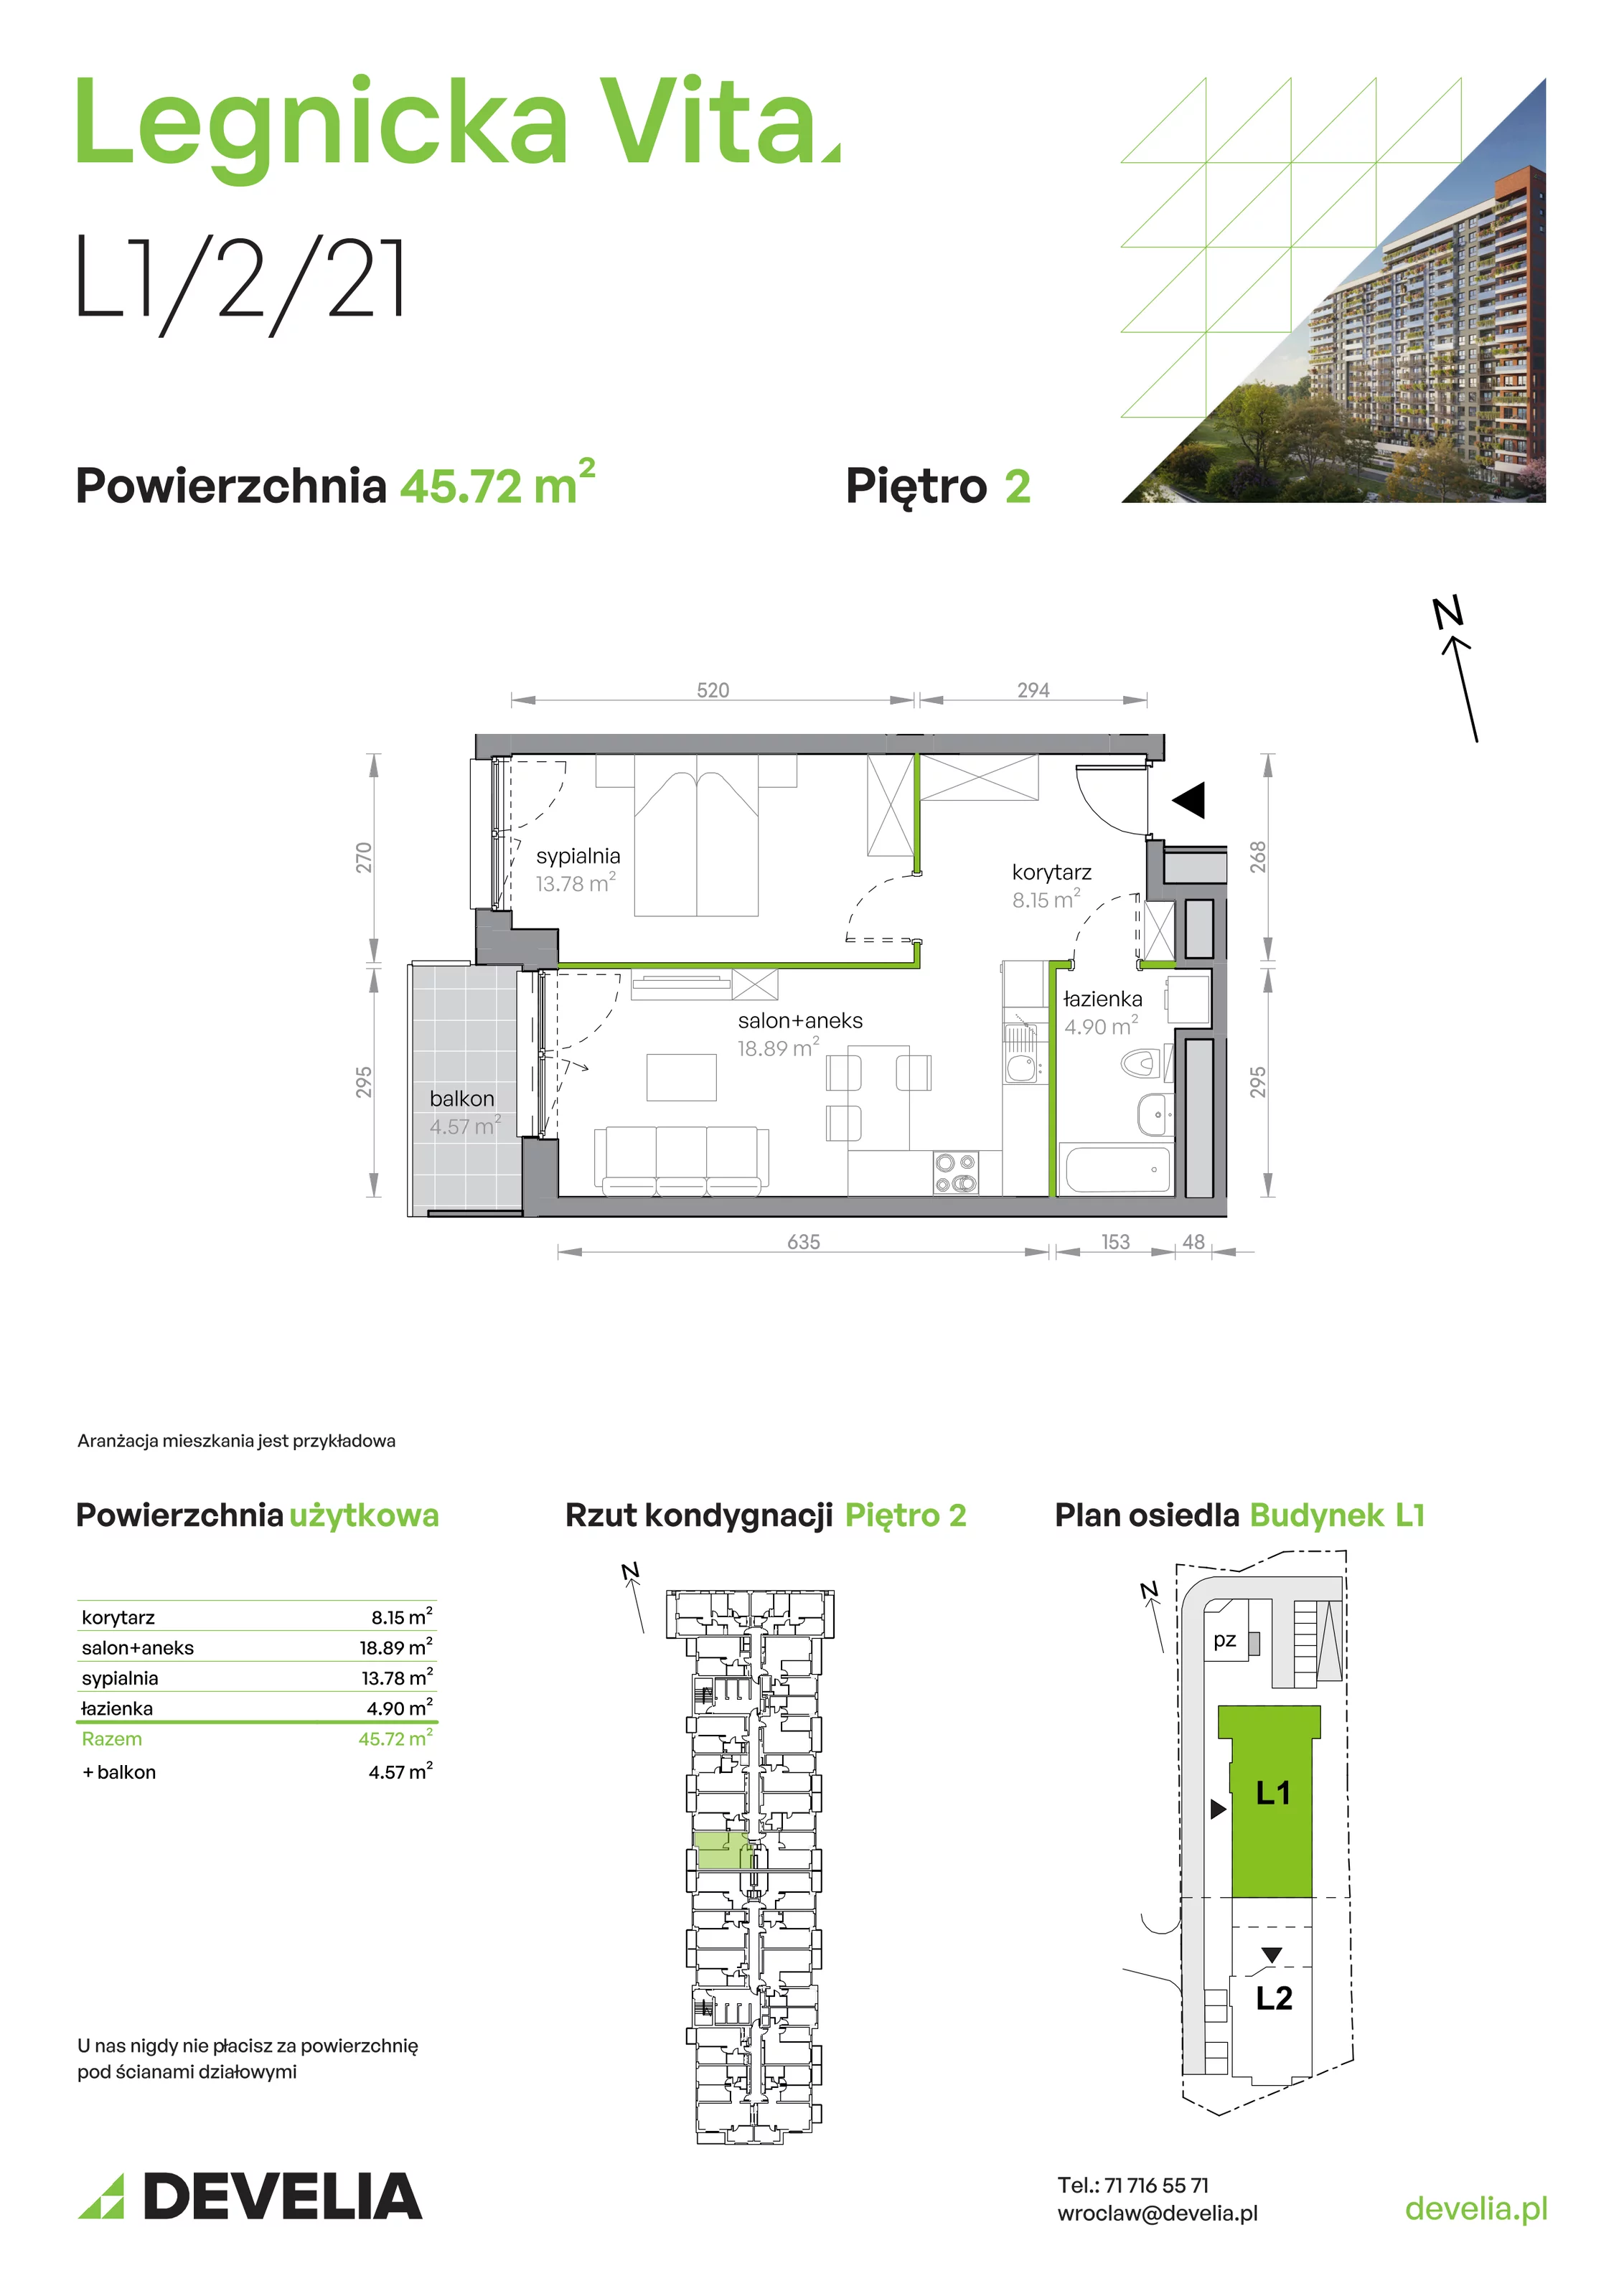 Mieszkanie 45,72 m², piętro 2, oferta nr L1/2/21, Legnicka Vita, Wrocław, Gądów-Popowice Południowe, Popowice, ul. Legnicka 52 A